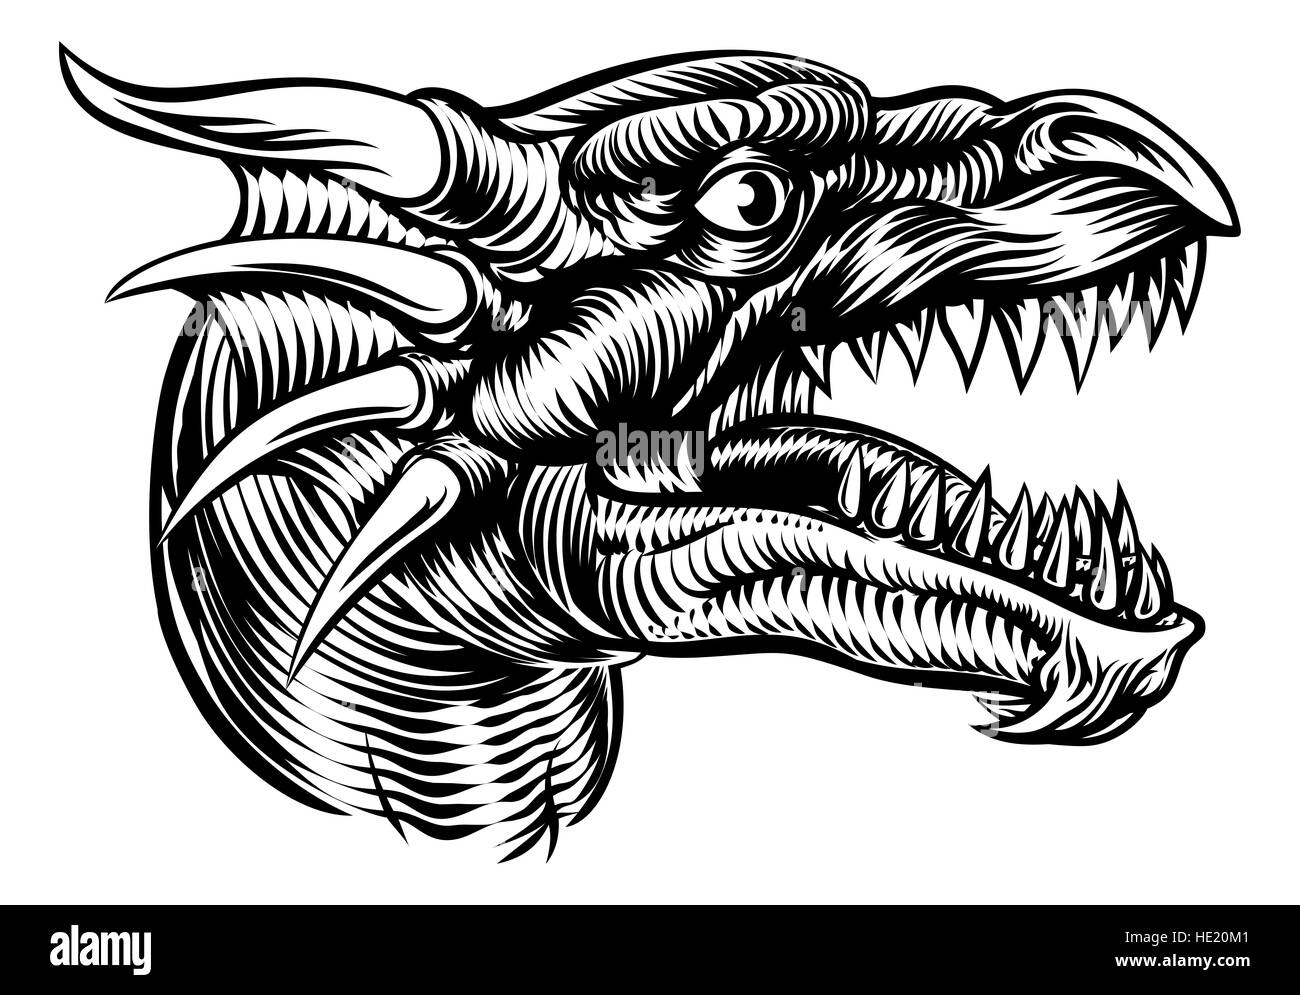 Illustrazione originale di un mostro testa di drago in un vintage retrò stile xilografia Foto Stock